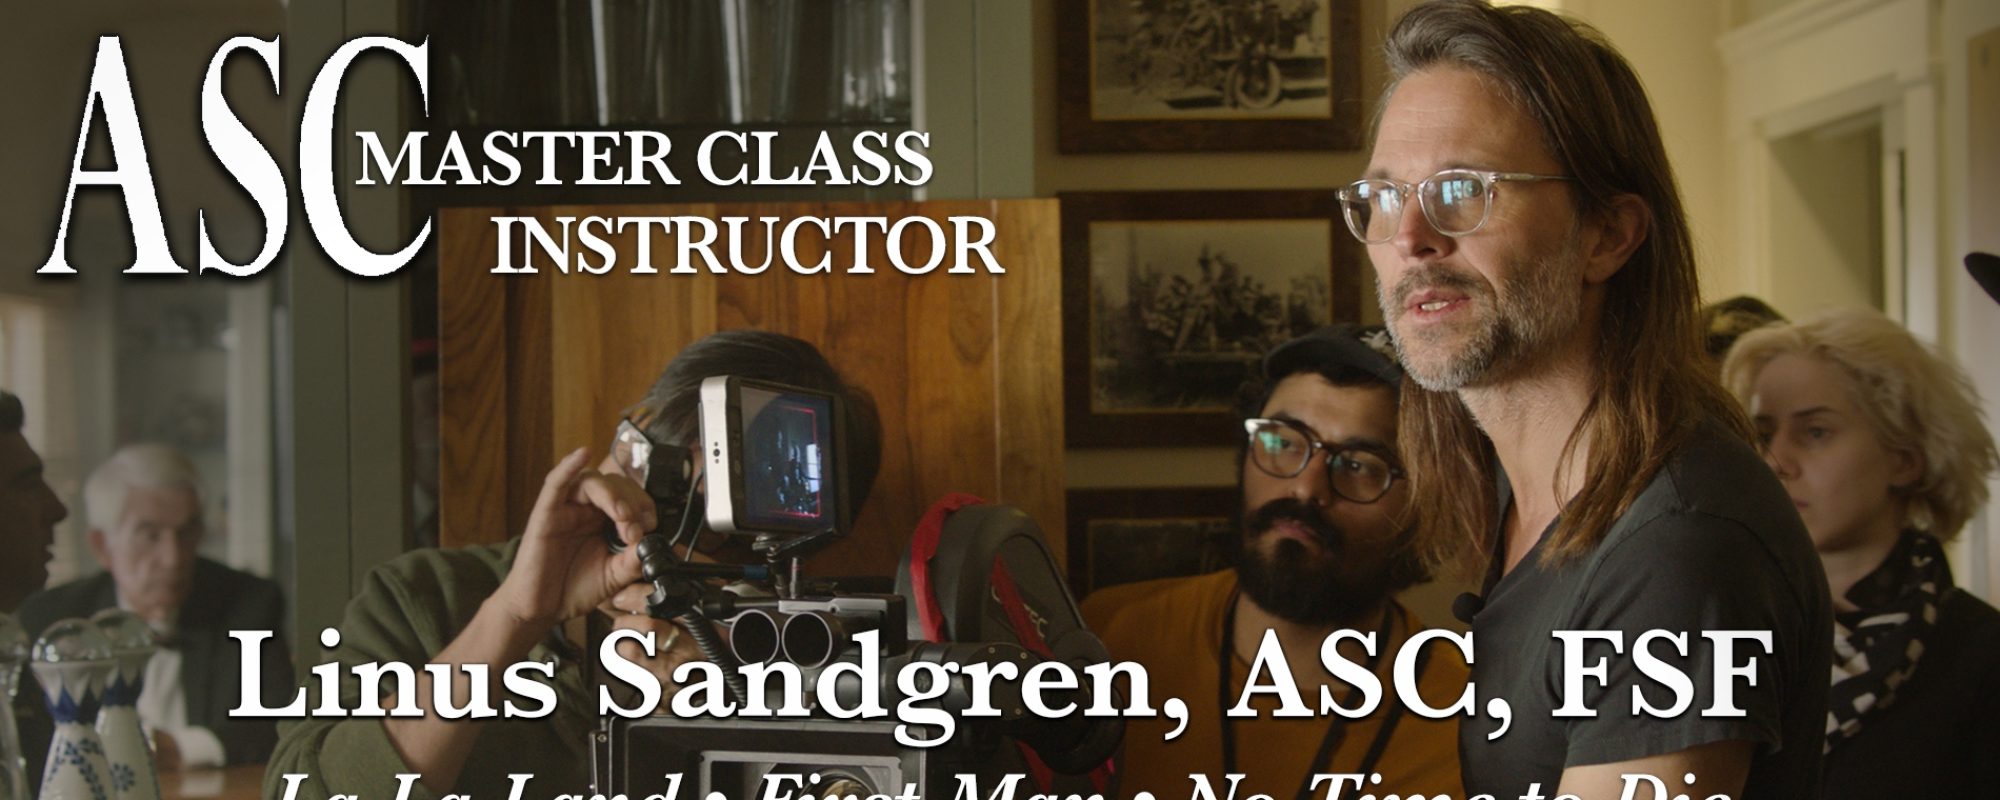 ASC Master Class Instructor: Linus Sandgren, ASC, FSF